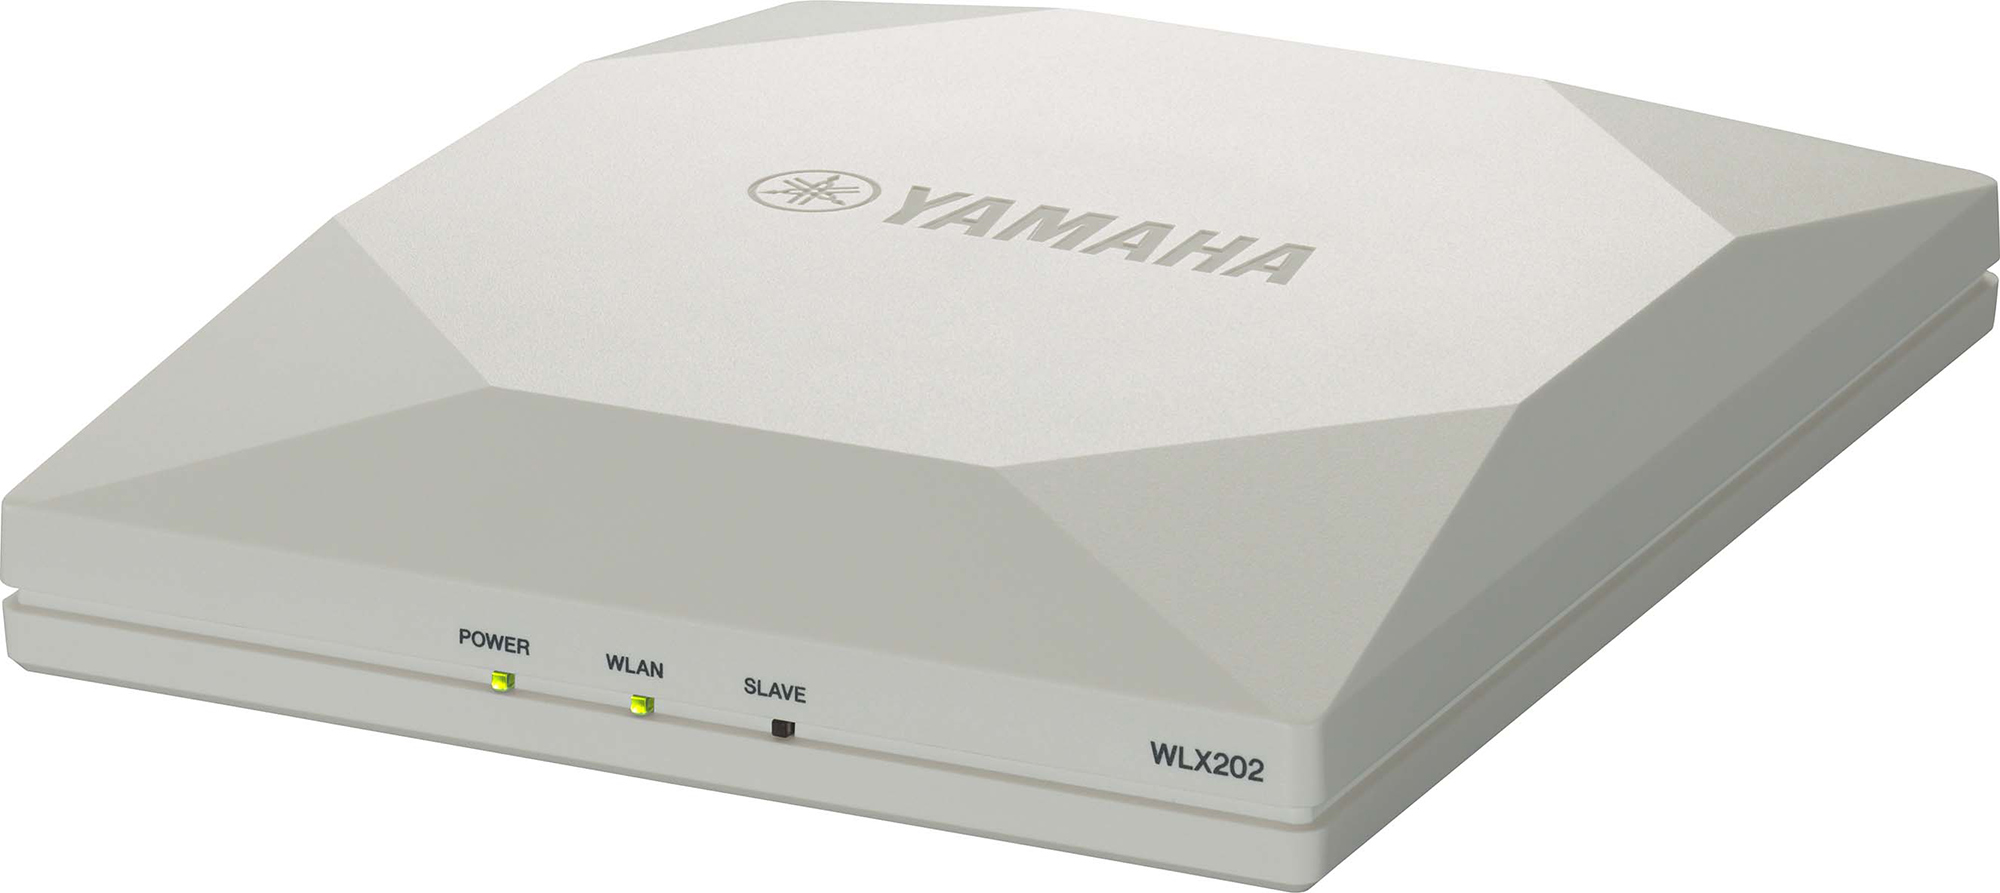 エンタープライズ用無線LAN構築に必要な機能・性能を厳選 無線LANアクセスポイント 『WLX202』 PoEインジェクター『YPS-PoE